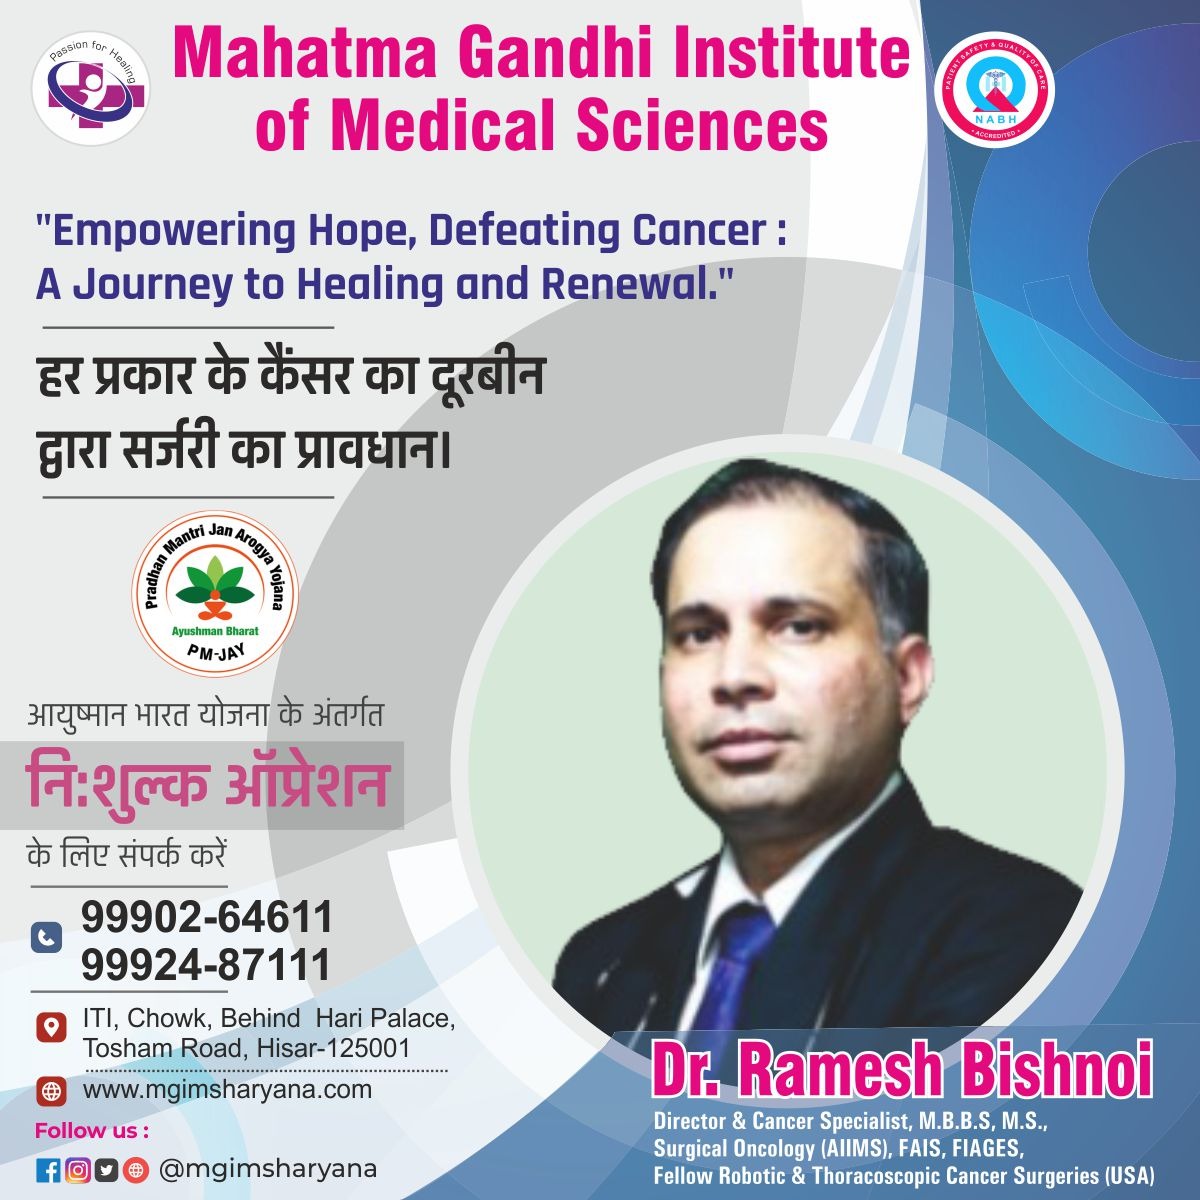 WhatsApp Image 2023 12 11 at 1.58.35 PM - कैंसर की समस्या होने पर तुरंत अस्पताल में विजिट करें व इलाज करवाएं: महात्मा गांधी इंस्टीट्यूट ऑफ मेडिकल साईंसिज-cancer-कैंसर की समस्या, MGIMS Haryana, MGIMS